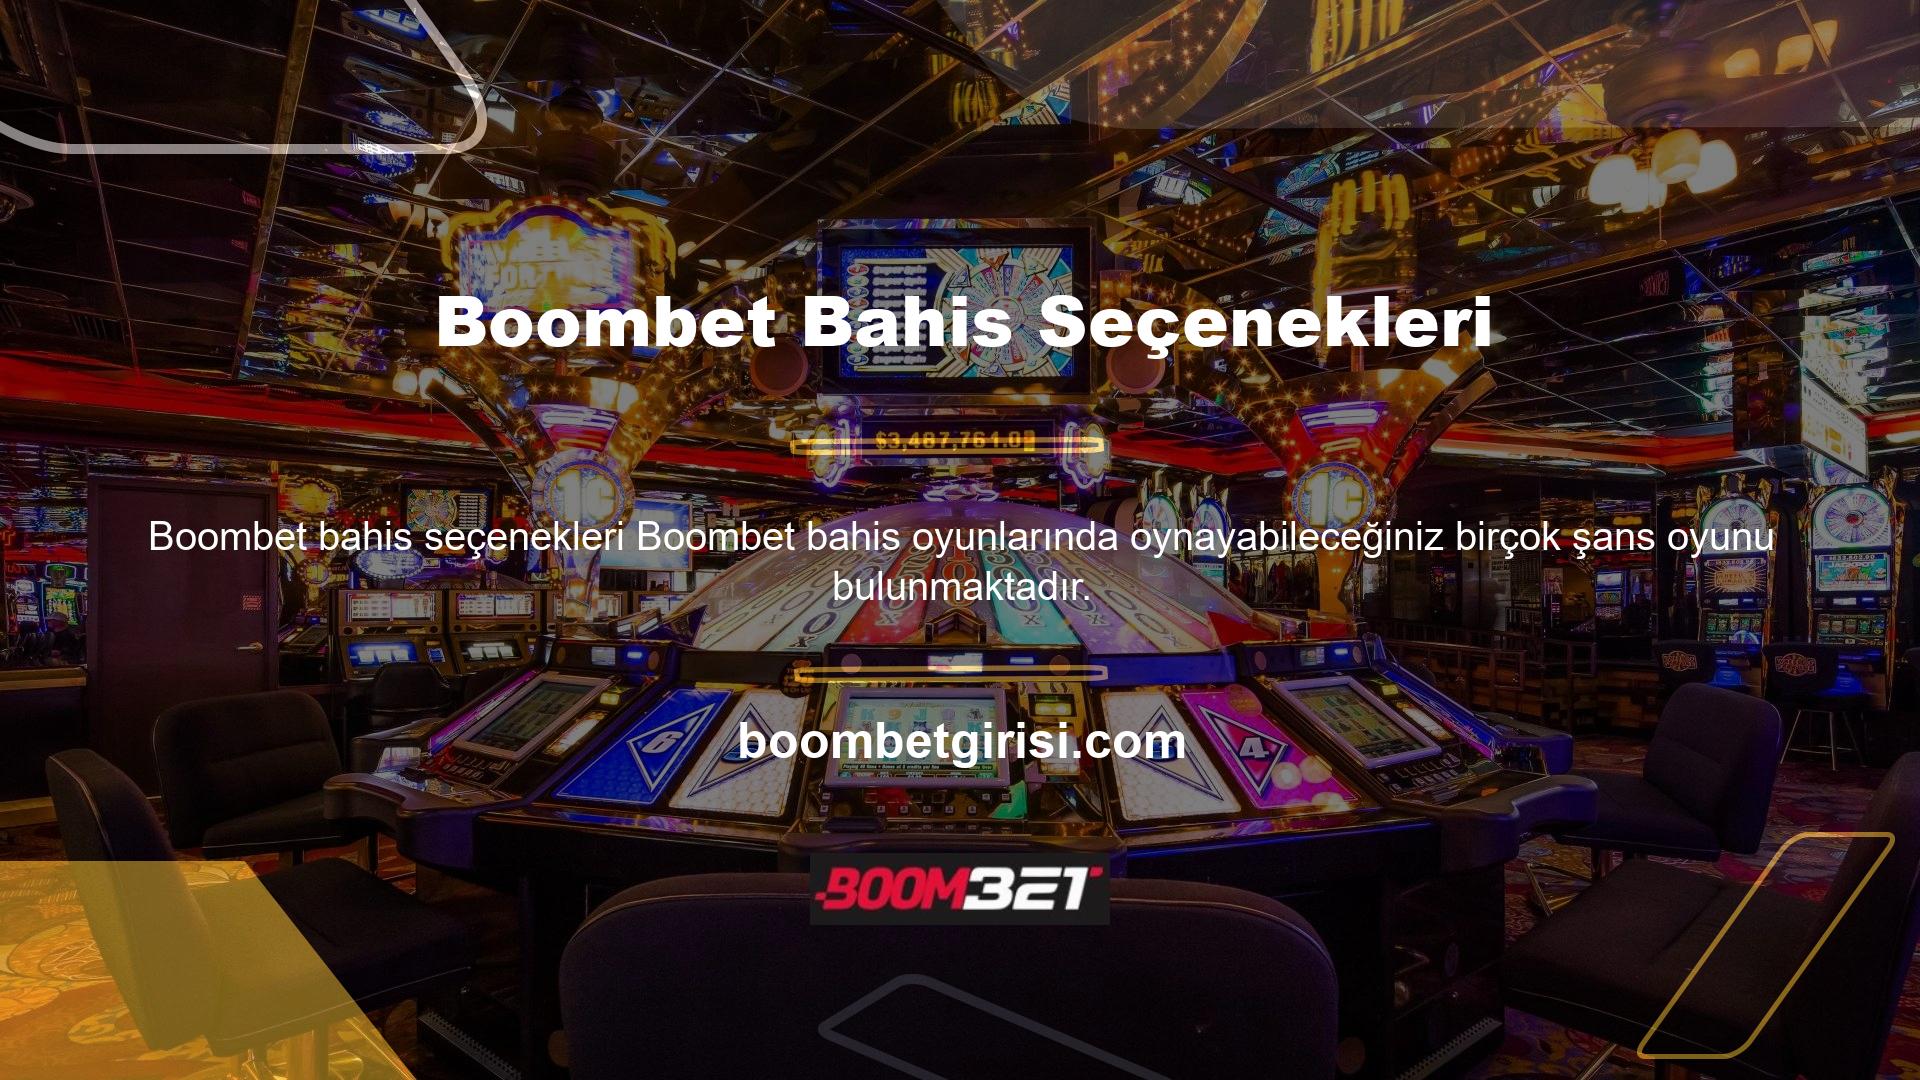 Boombet, kullanıcılarına pokerden slot oyunlarına, açılardan kirli sayılara kadar pek çok casino oyunu sunmaktadır